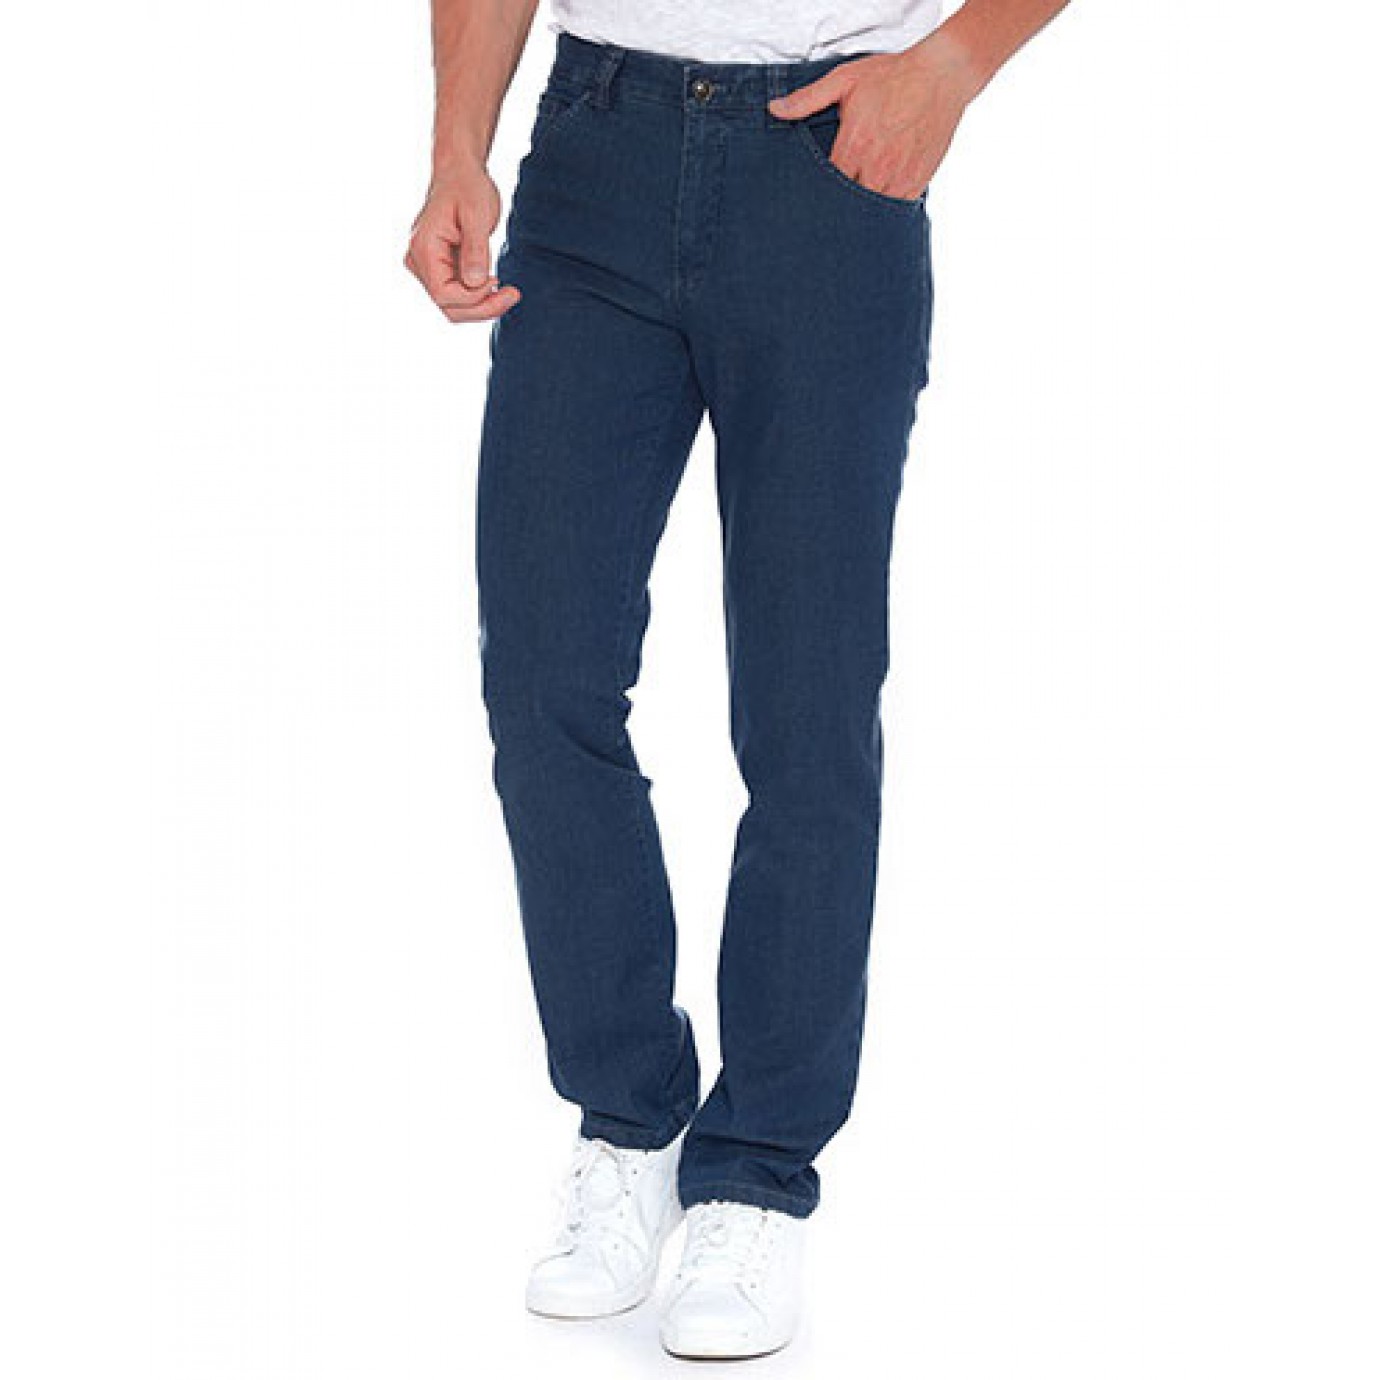 Брюки мужские Meyer Dublin 5-481/18, синие с джинсовым карманом купить вМоскве в интернет-магазине SHOP4BIG - цена, фото, описание